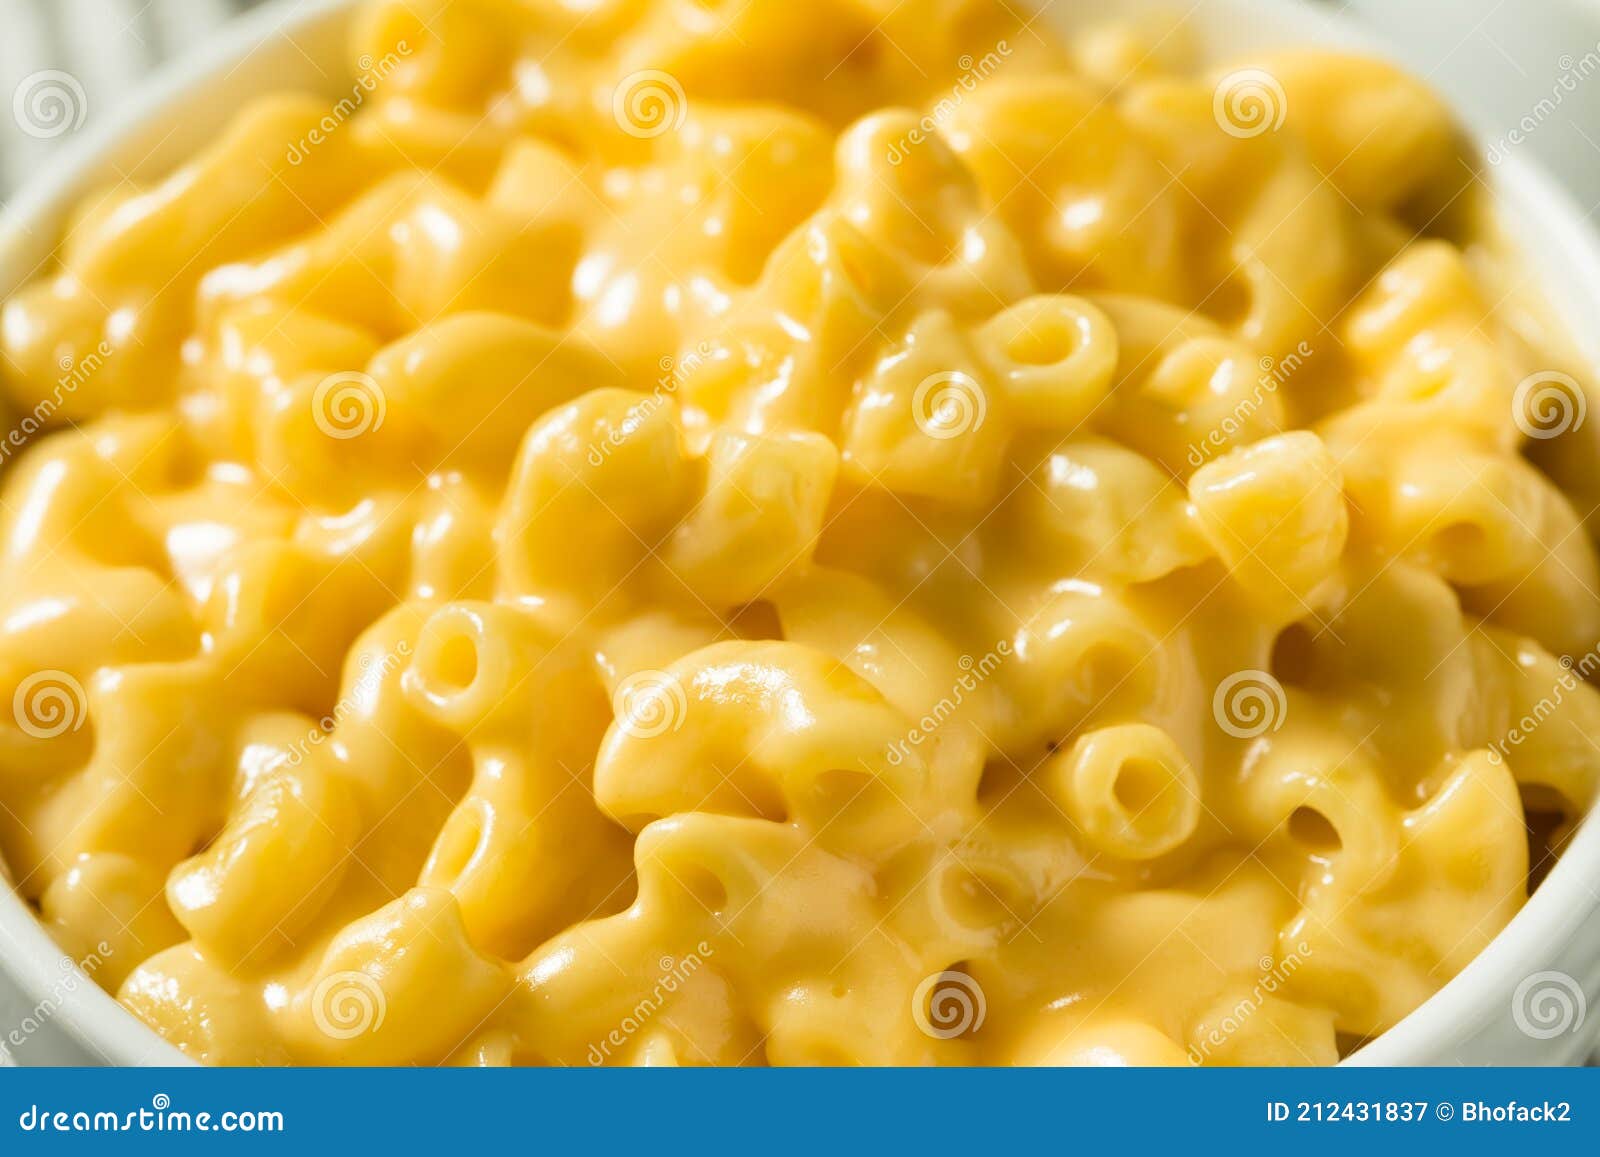 homemade creamy macaroni and cheese pasta